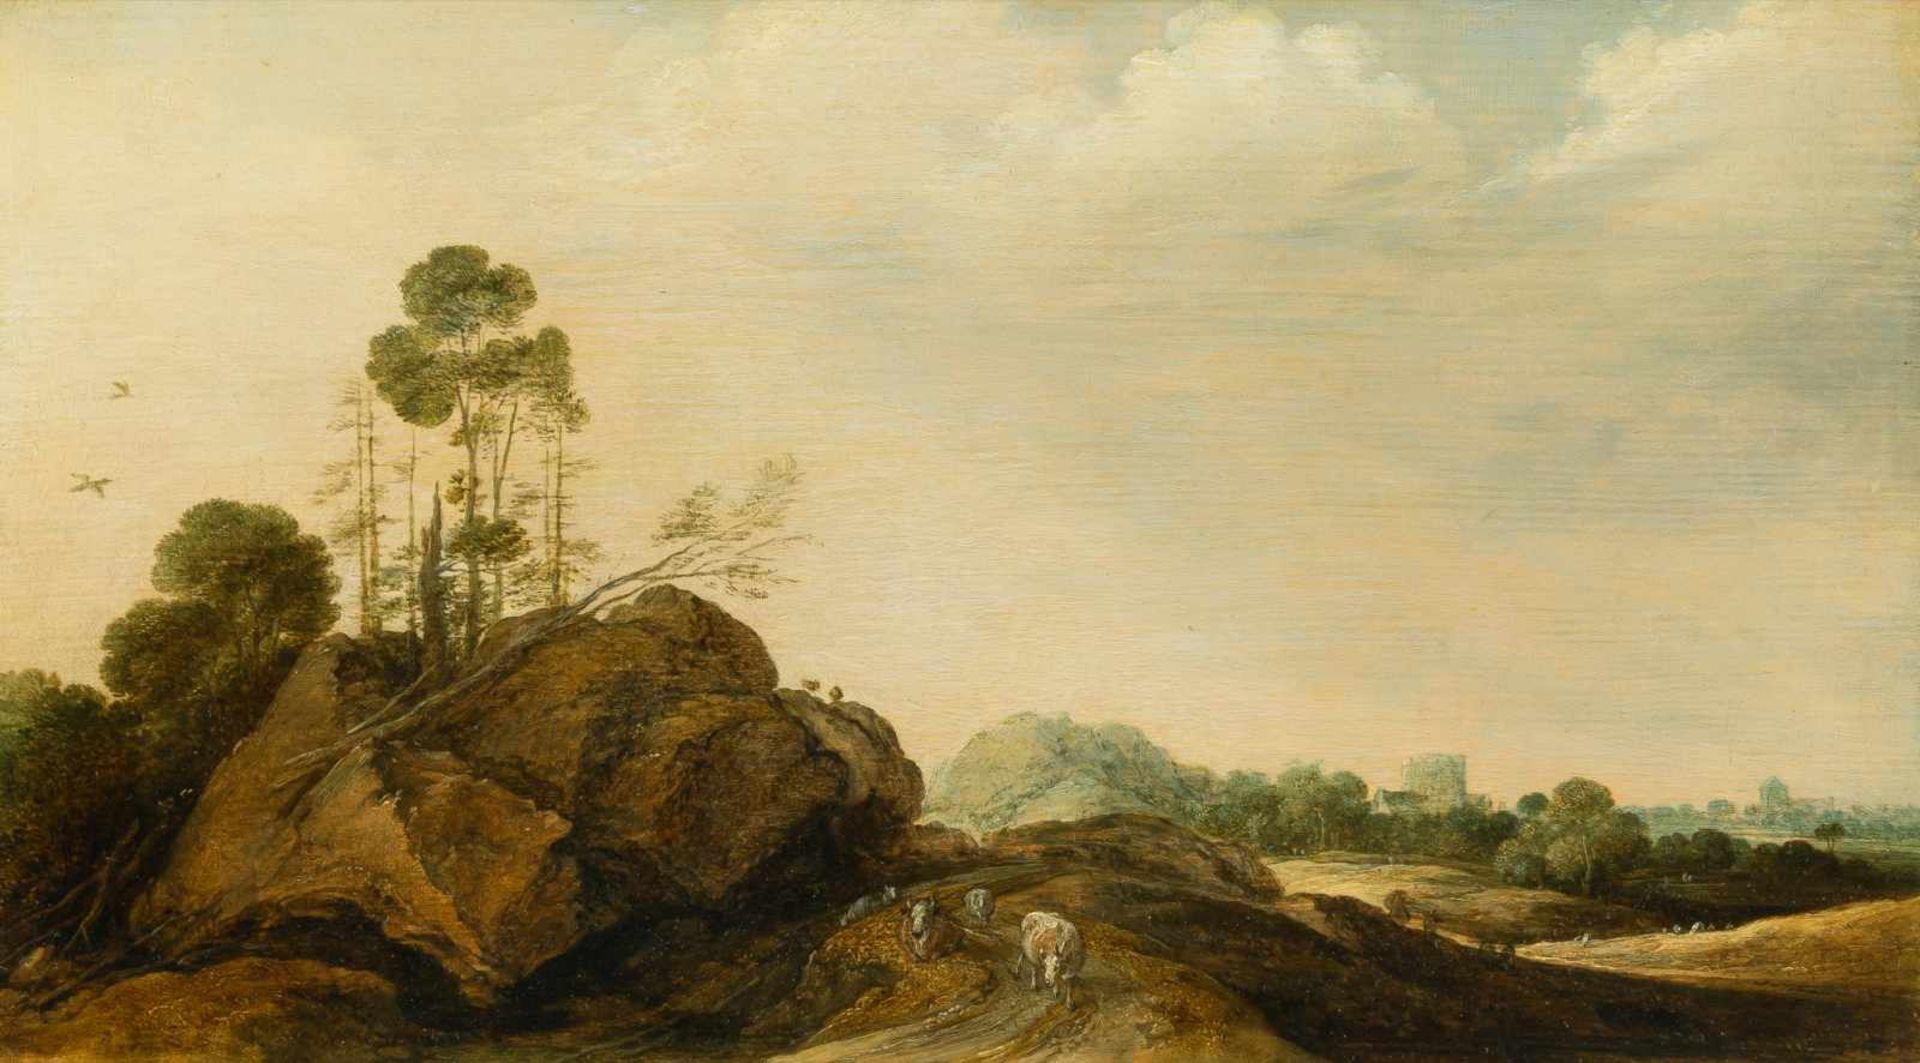 Gillis Claesz. D' Hondecoeter1575/80 Antwerpen - Amsterdam 1638Felsige Landschaft mit Vieh und